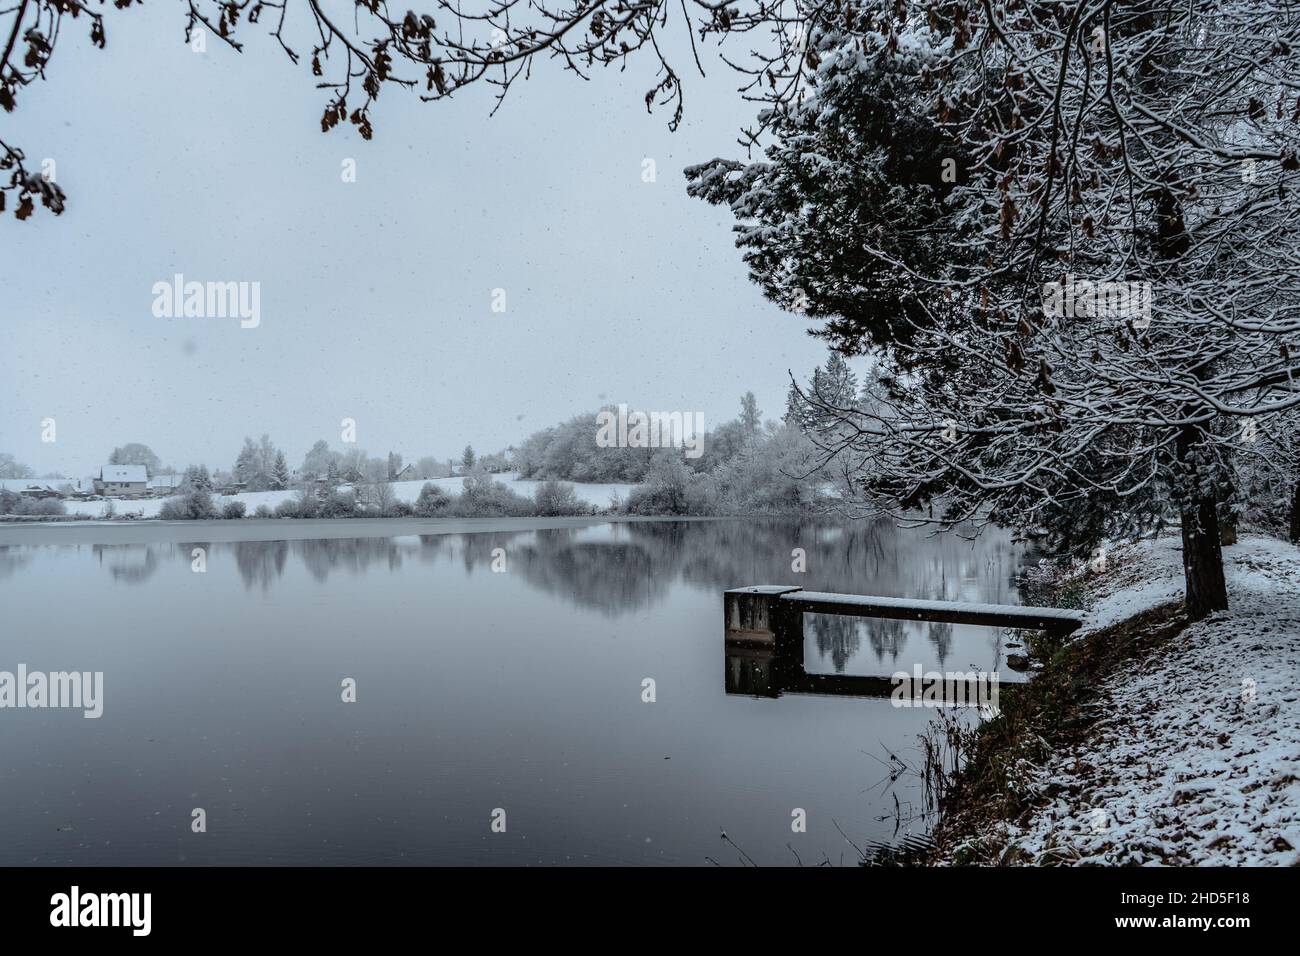 Molo di legno sul lago con neve fresca. Laghetto invernale con piccolo molo al mattino nebbioso. Paesaggio nuvoloso riflesso in acqua. Bianca campagna invernale Foto Stock